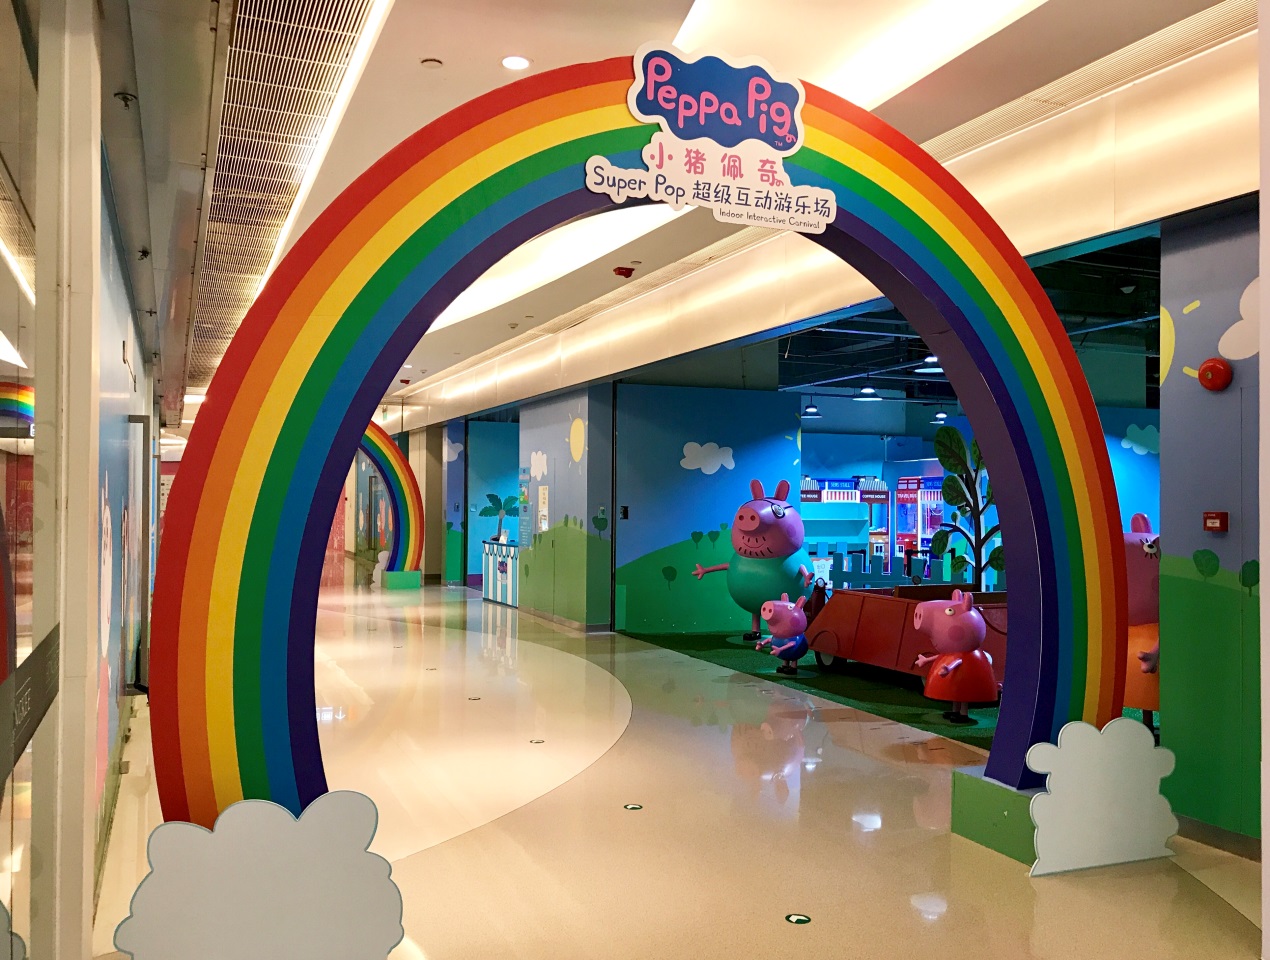 本次小猪佩奇super pop超级互动游乐场在mpt天津世纪都会举办,占地